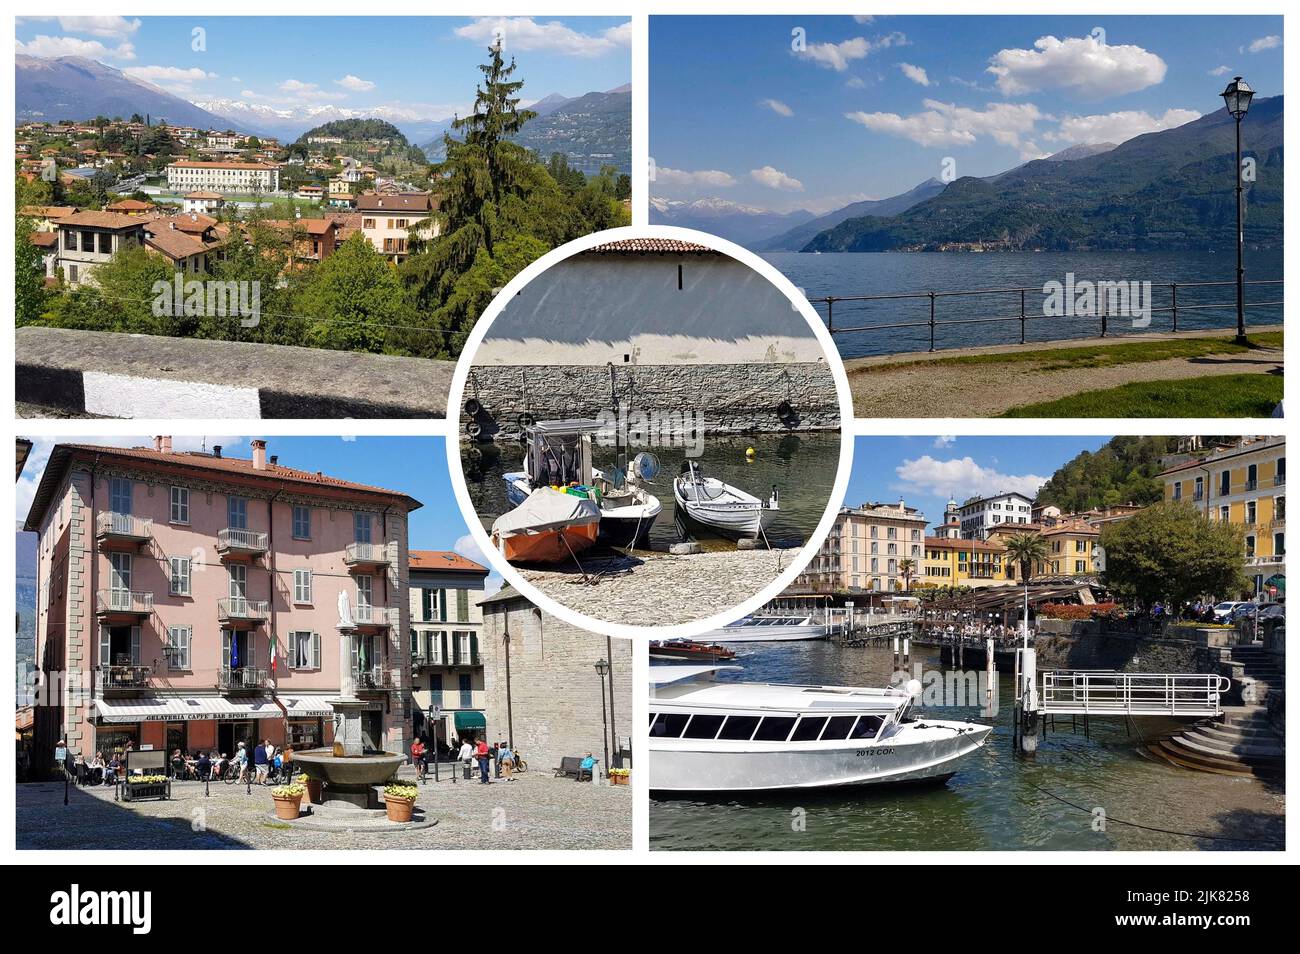 Comer See, Stadt Bellagio, Italien. Faszinierende Landschaft der Küstenstadt in berühmten und beliebten Luxus-Sommer-Resort - Comer See. Stockfoto